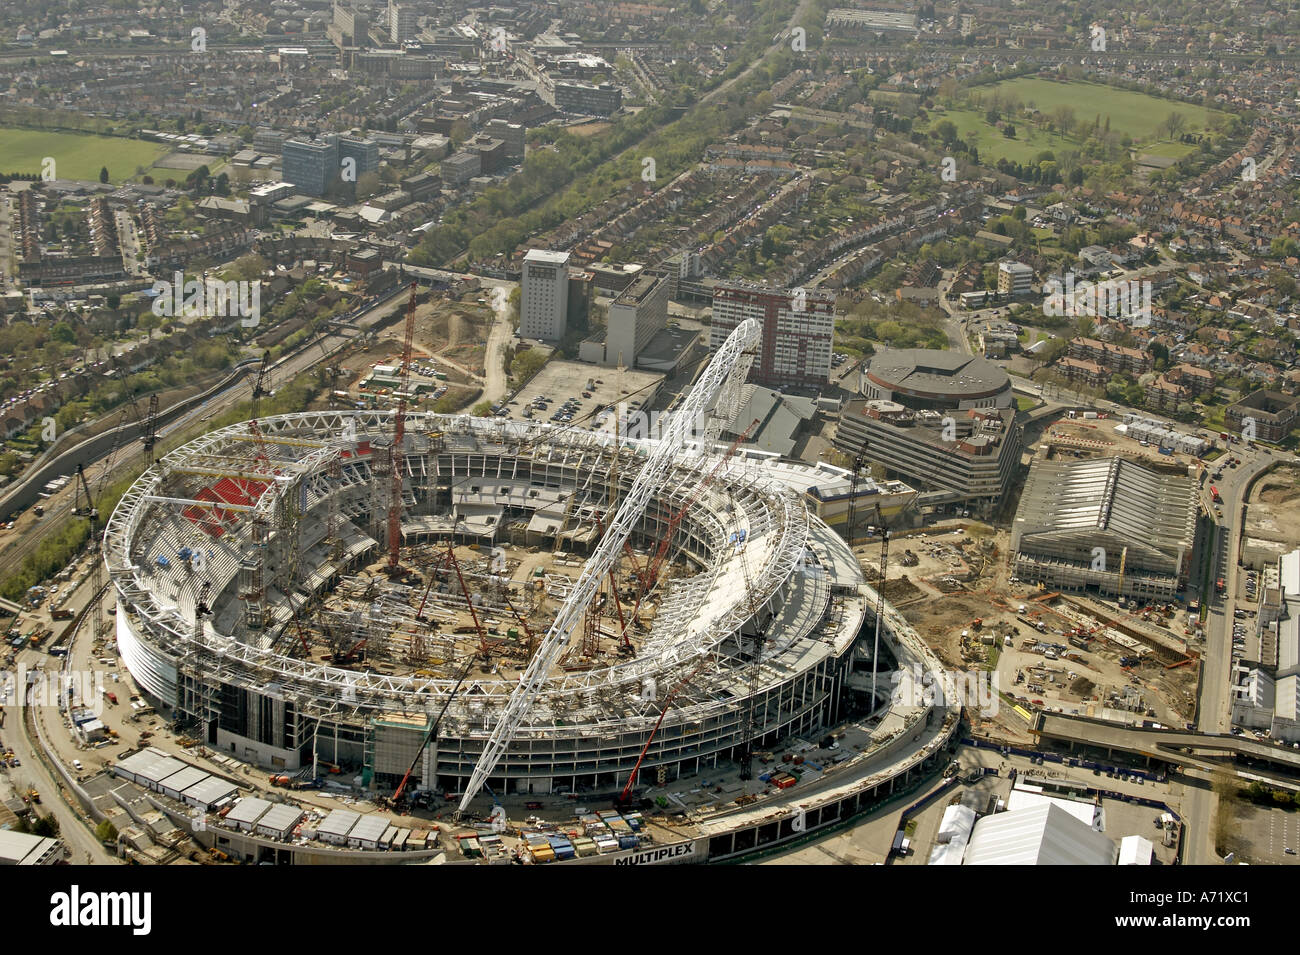 Haut niveau de l'antenne vue oblique au sud-ouest de nouveau stade de Wembley en construction London HA9 Angleterre Avril 2005 Banque D'Images